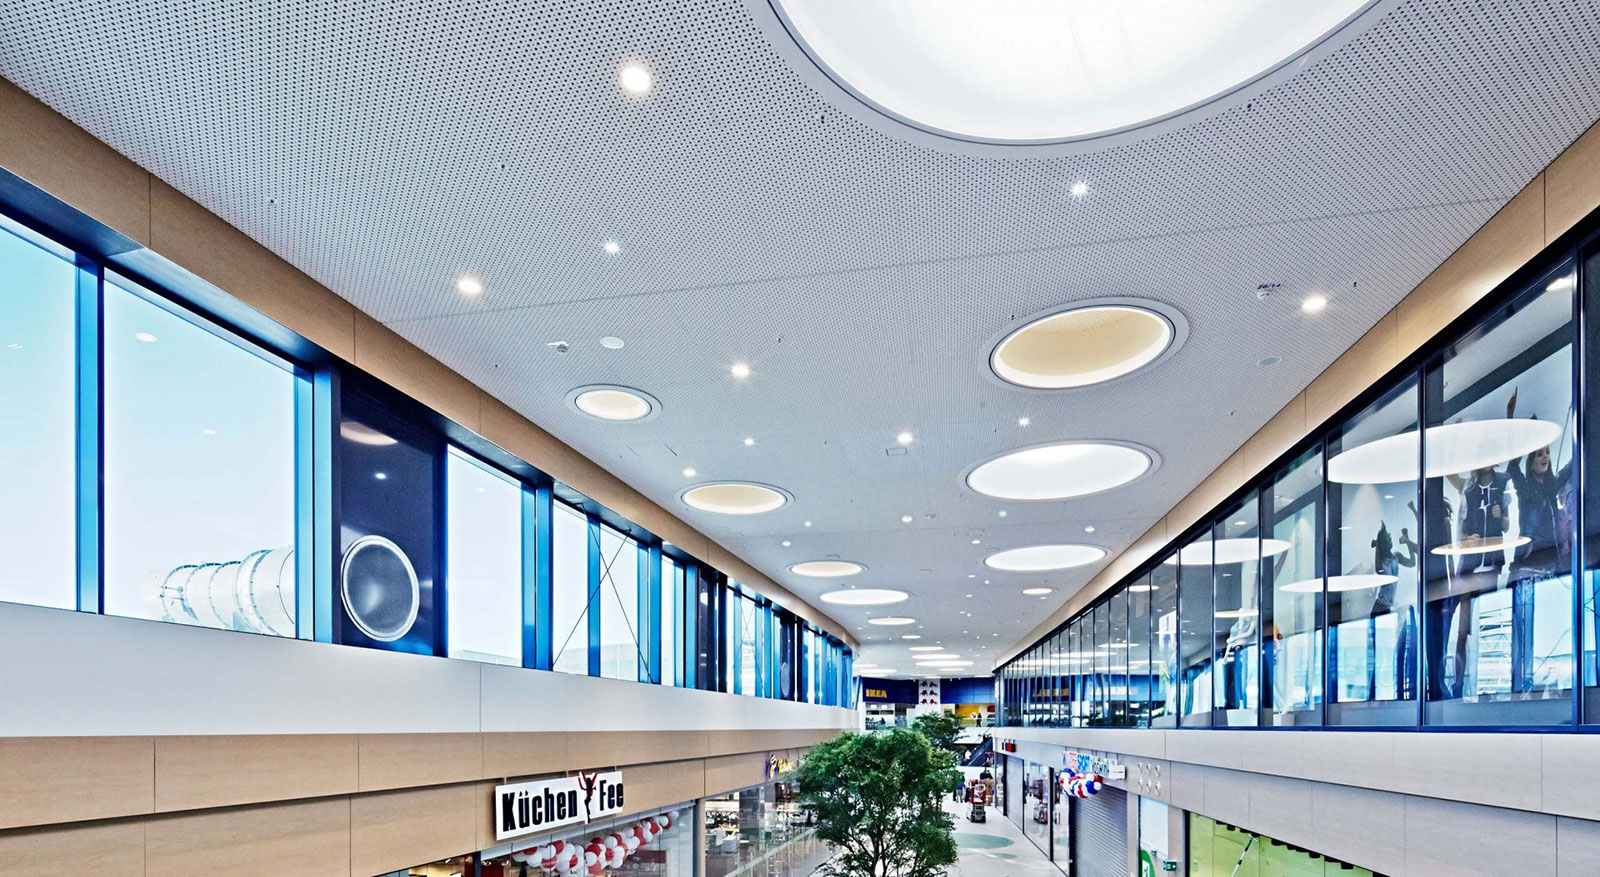 Das Profilbild der KAEFER Construction GmbH zeigt eine Shopping Mall von innen.